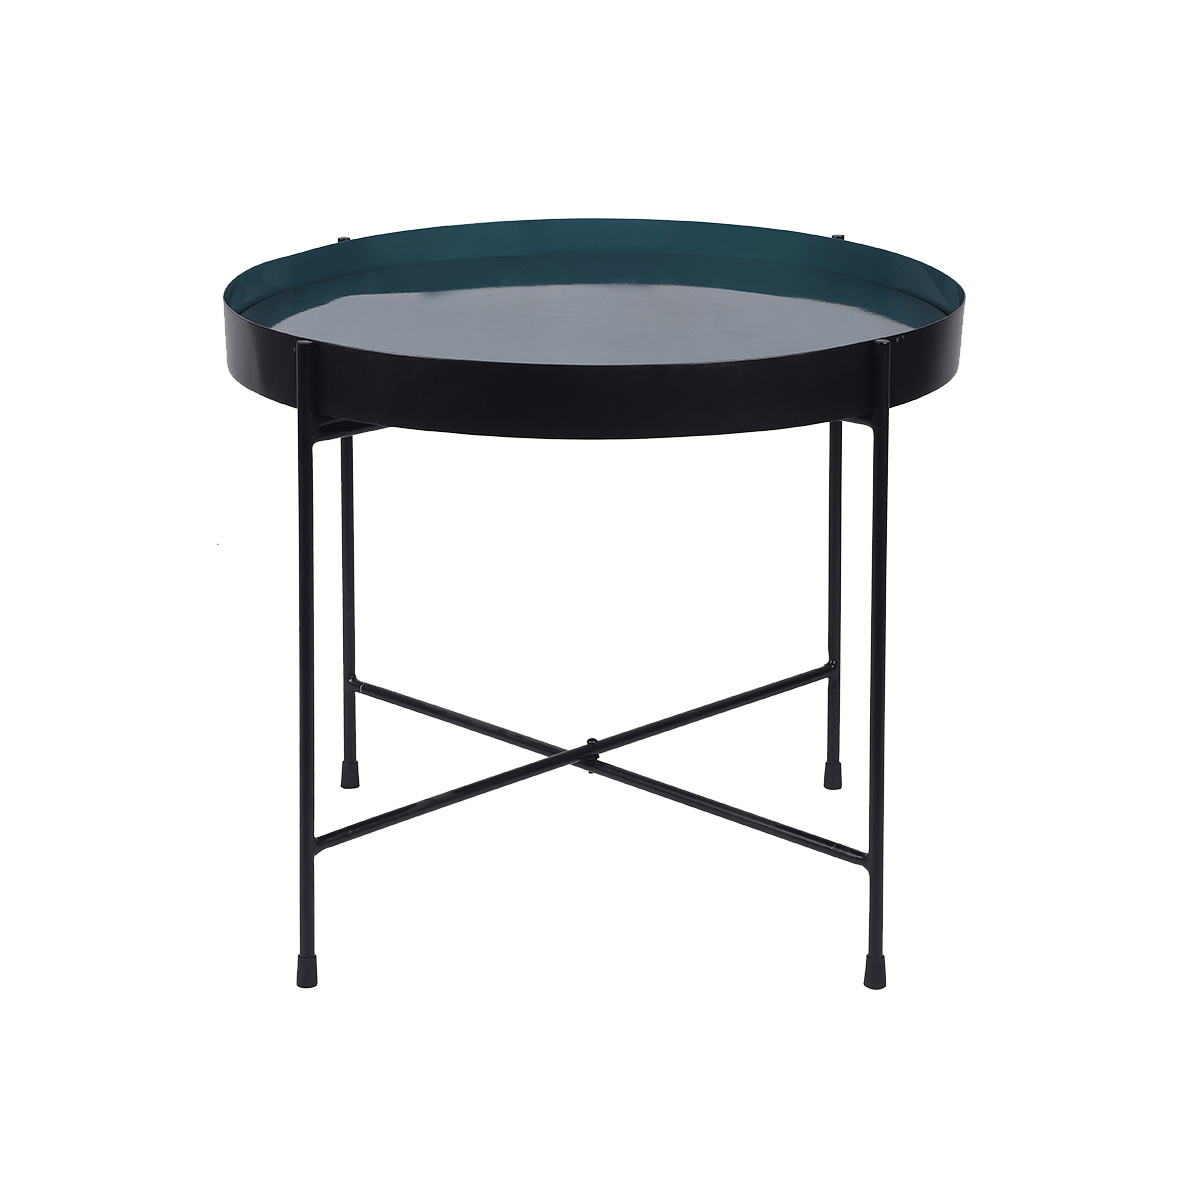 Table d'apppoint ronde avec plateau réversible bleu canard / noir D51 cm SATEEN - Miliboo & Stéphane Plaza vue1